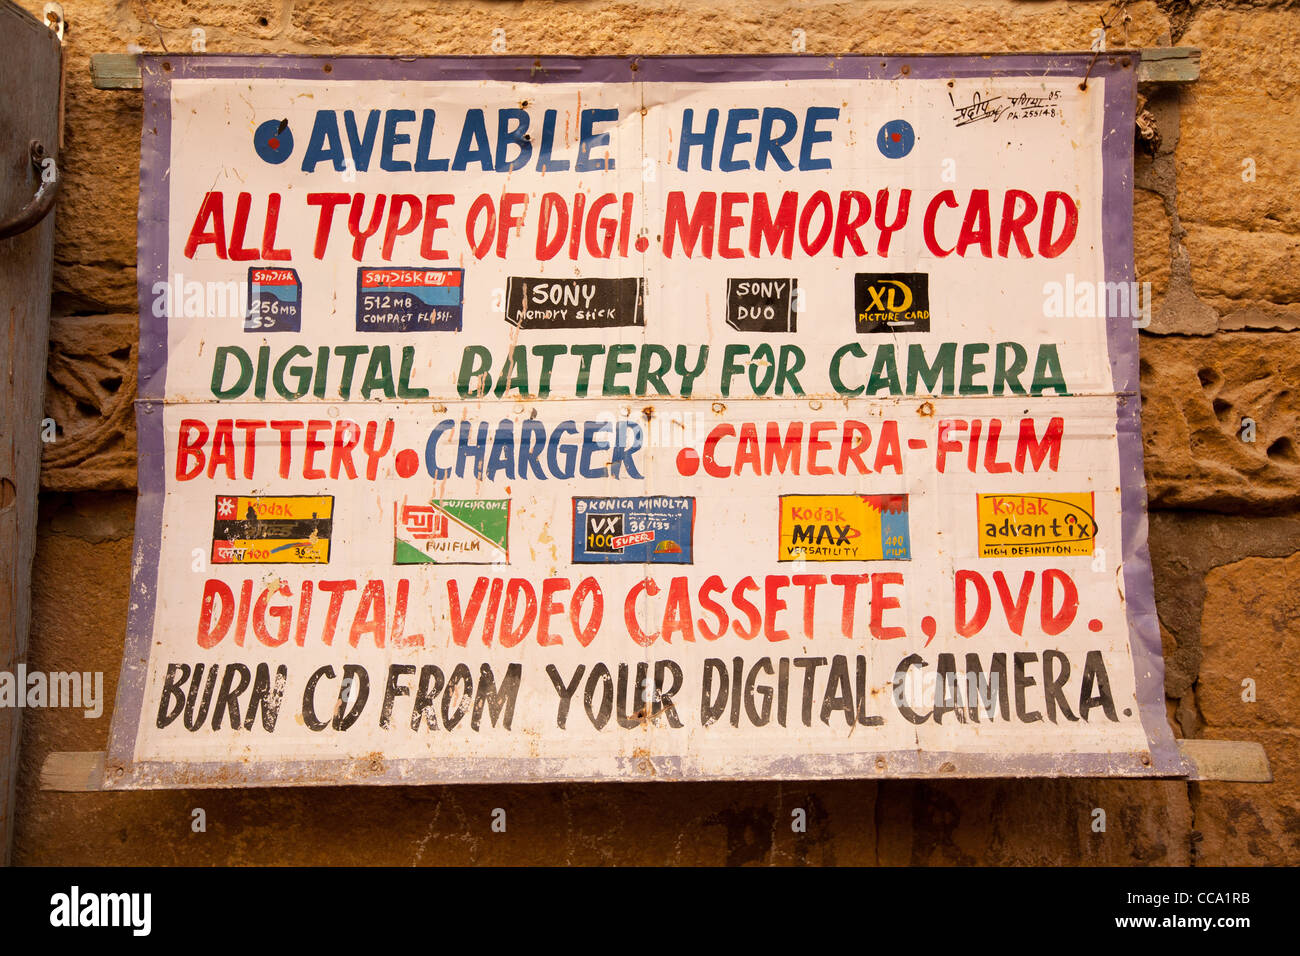 Touristische Schilder, Werbung, digitale Medien-Speicherkarten, Batterien, Video, film Etc...inside Jaisalmer Fort, in Rajasthan, Indien. Stockfoto